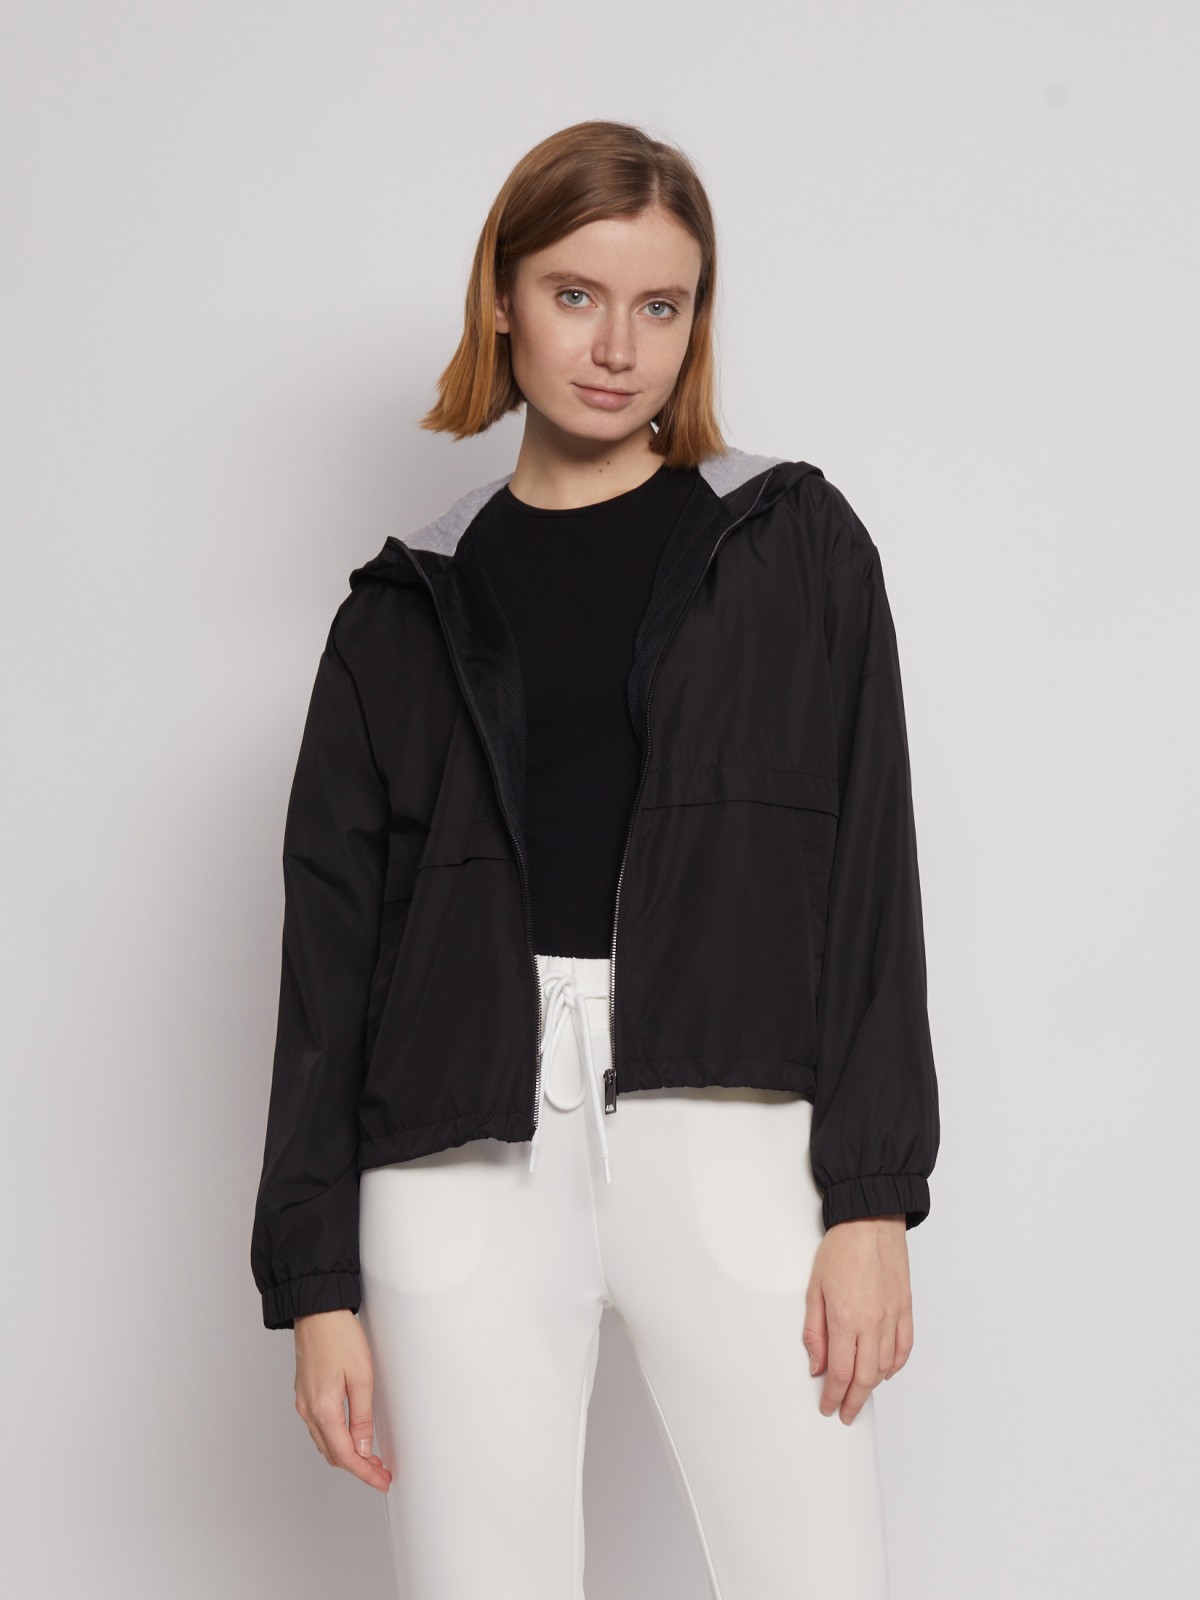 Куртка-ветровка с капюшоном zolla 022215602024, цвет черный, размер XS - фото 3